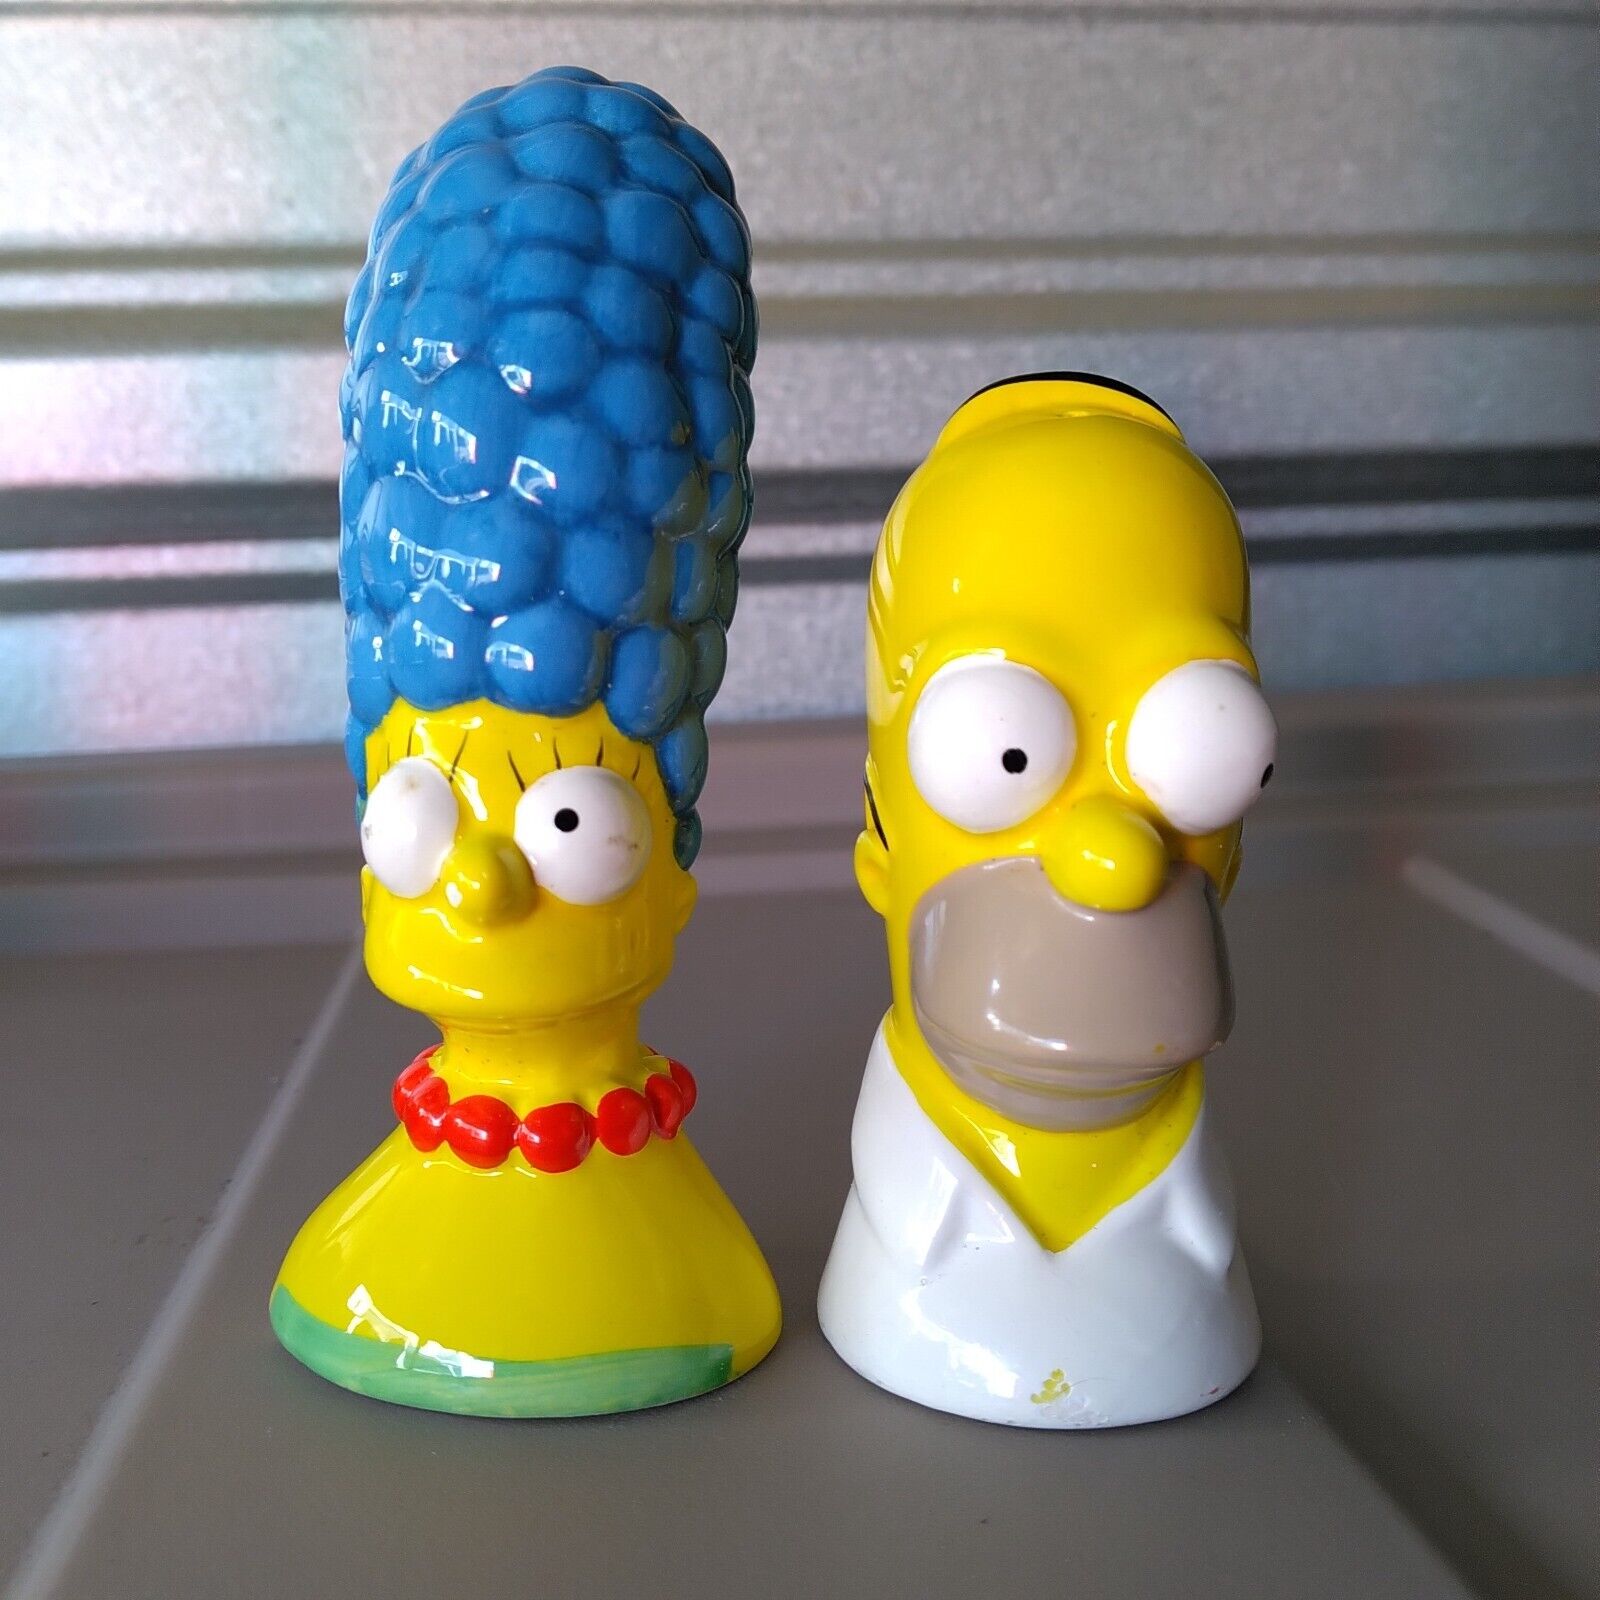 Vintage The Simpsons Homer & Marge Salt and Pepper Shaker Set 2000 Ceramic